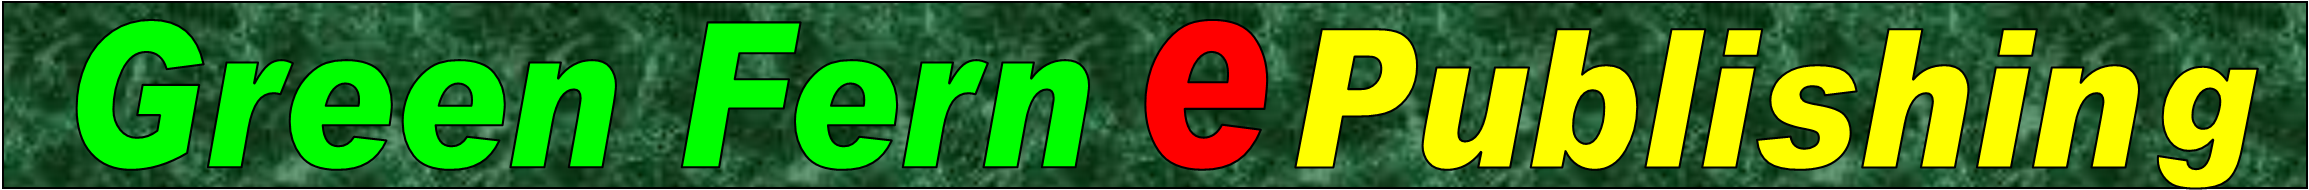 Green Fern ePublishing logo